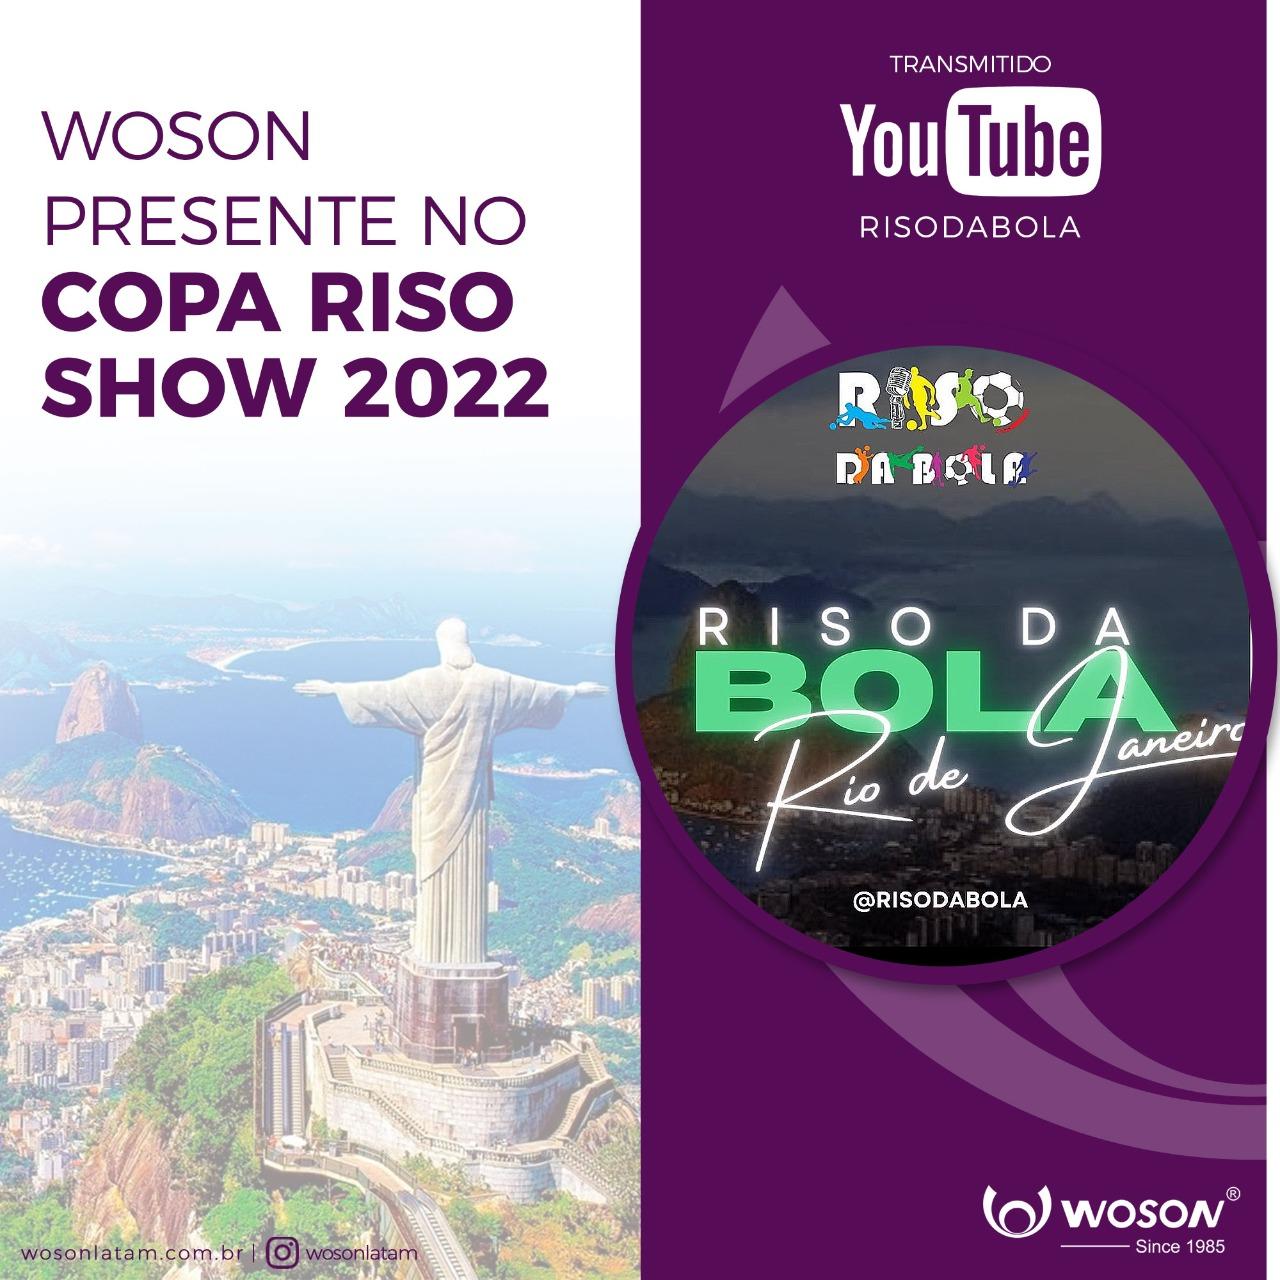 WOSON PRESENTE NO COPA RISO SHOW 2022